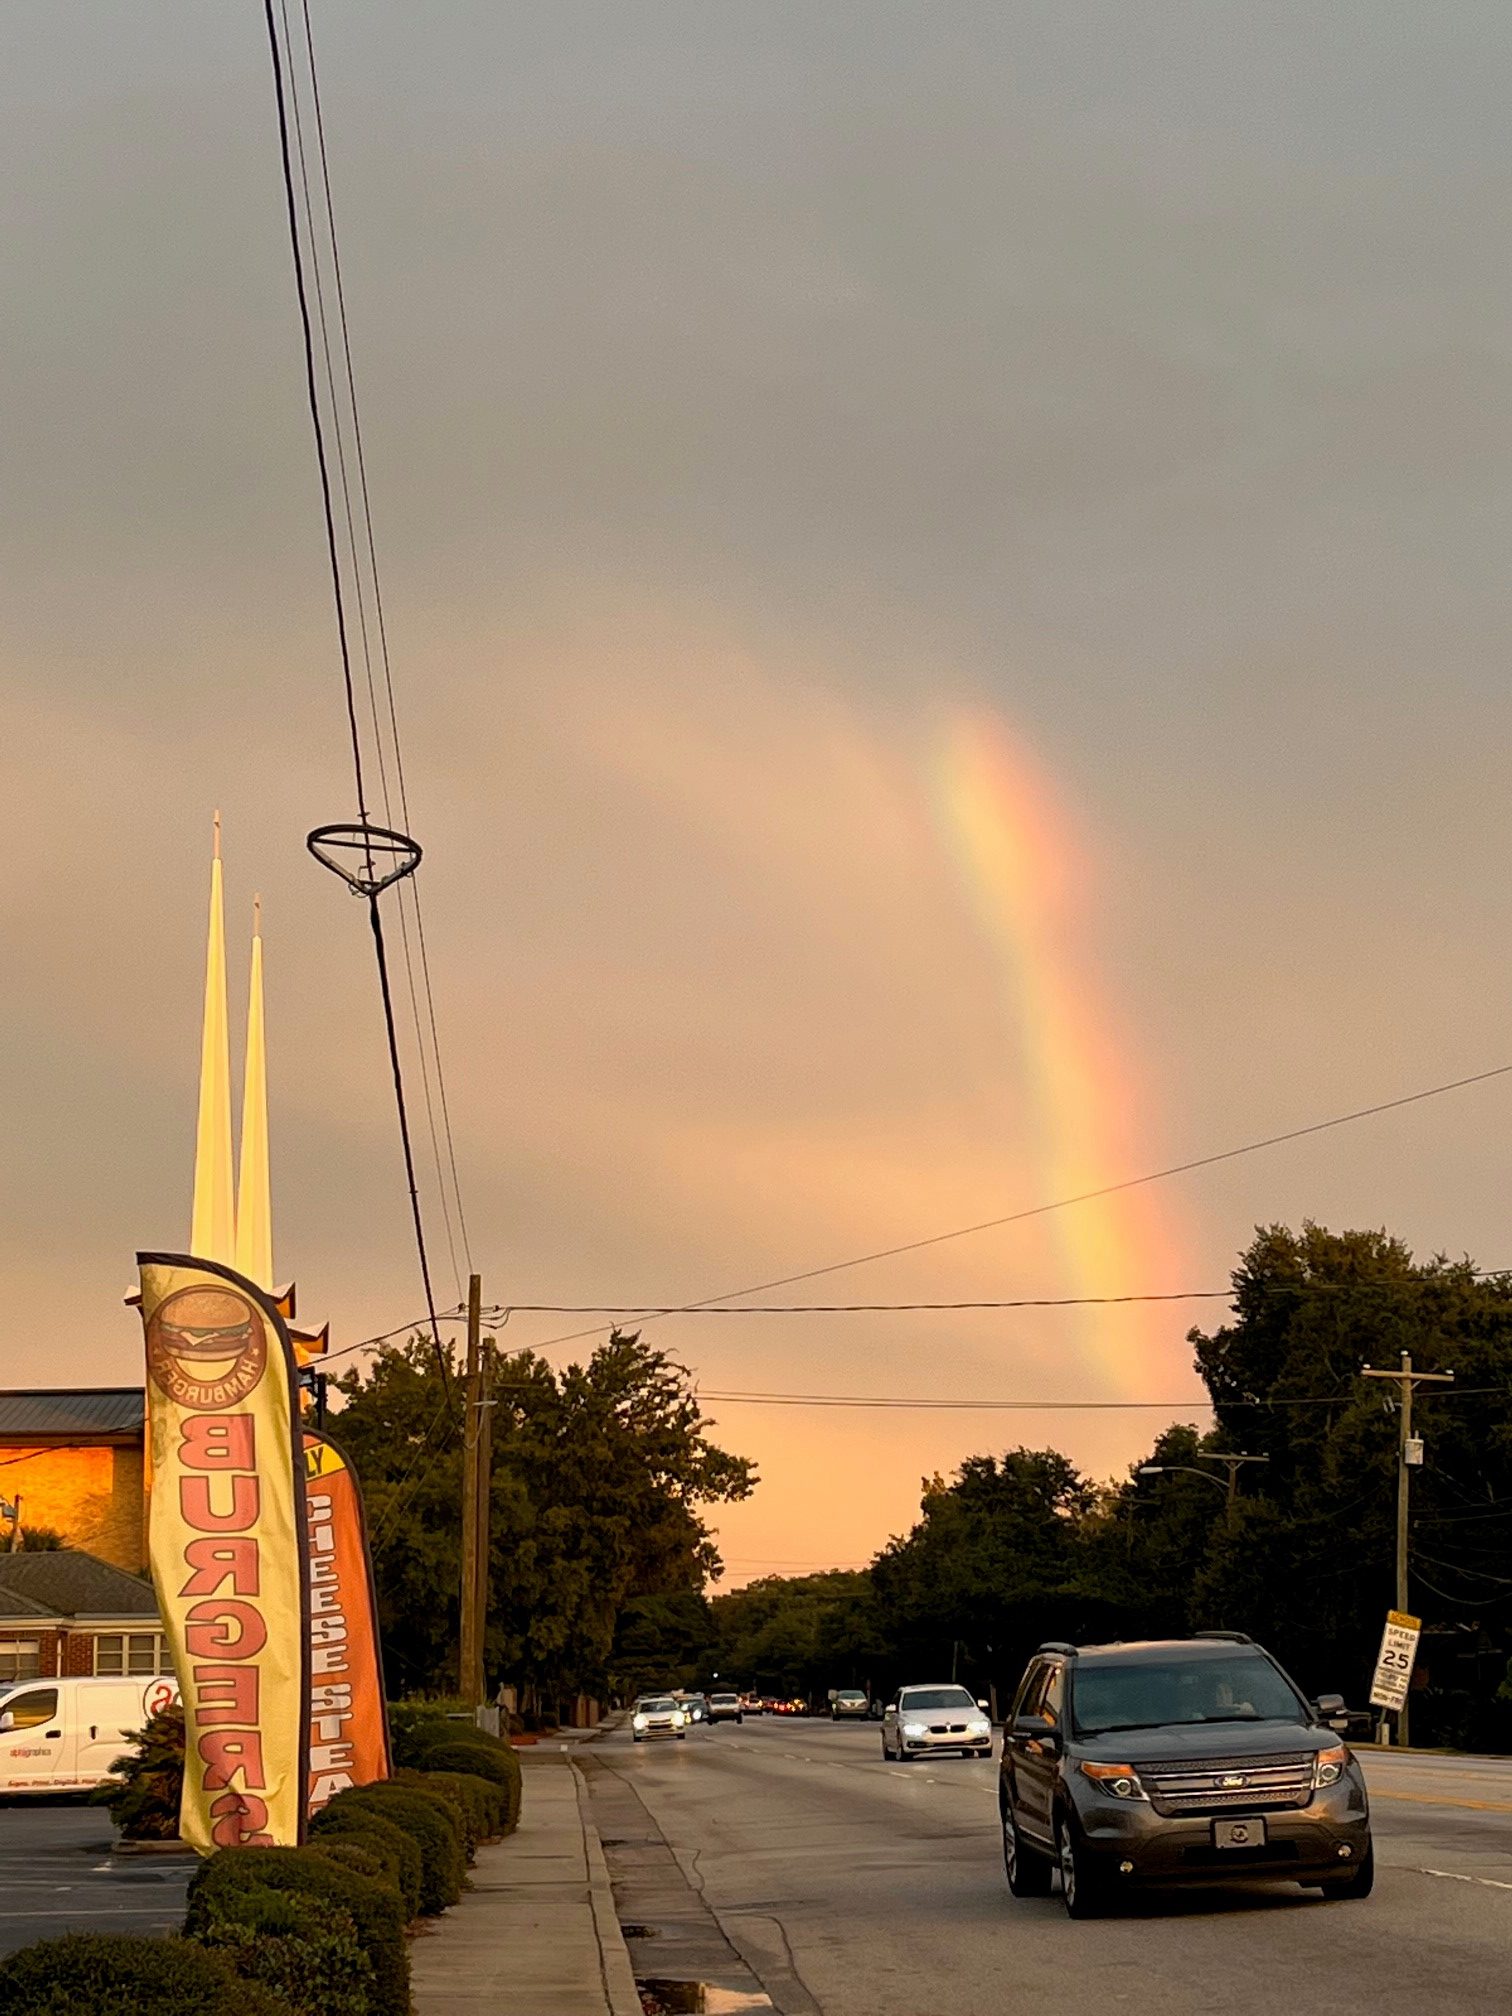 An image of a rainbow